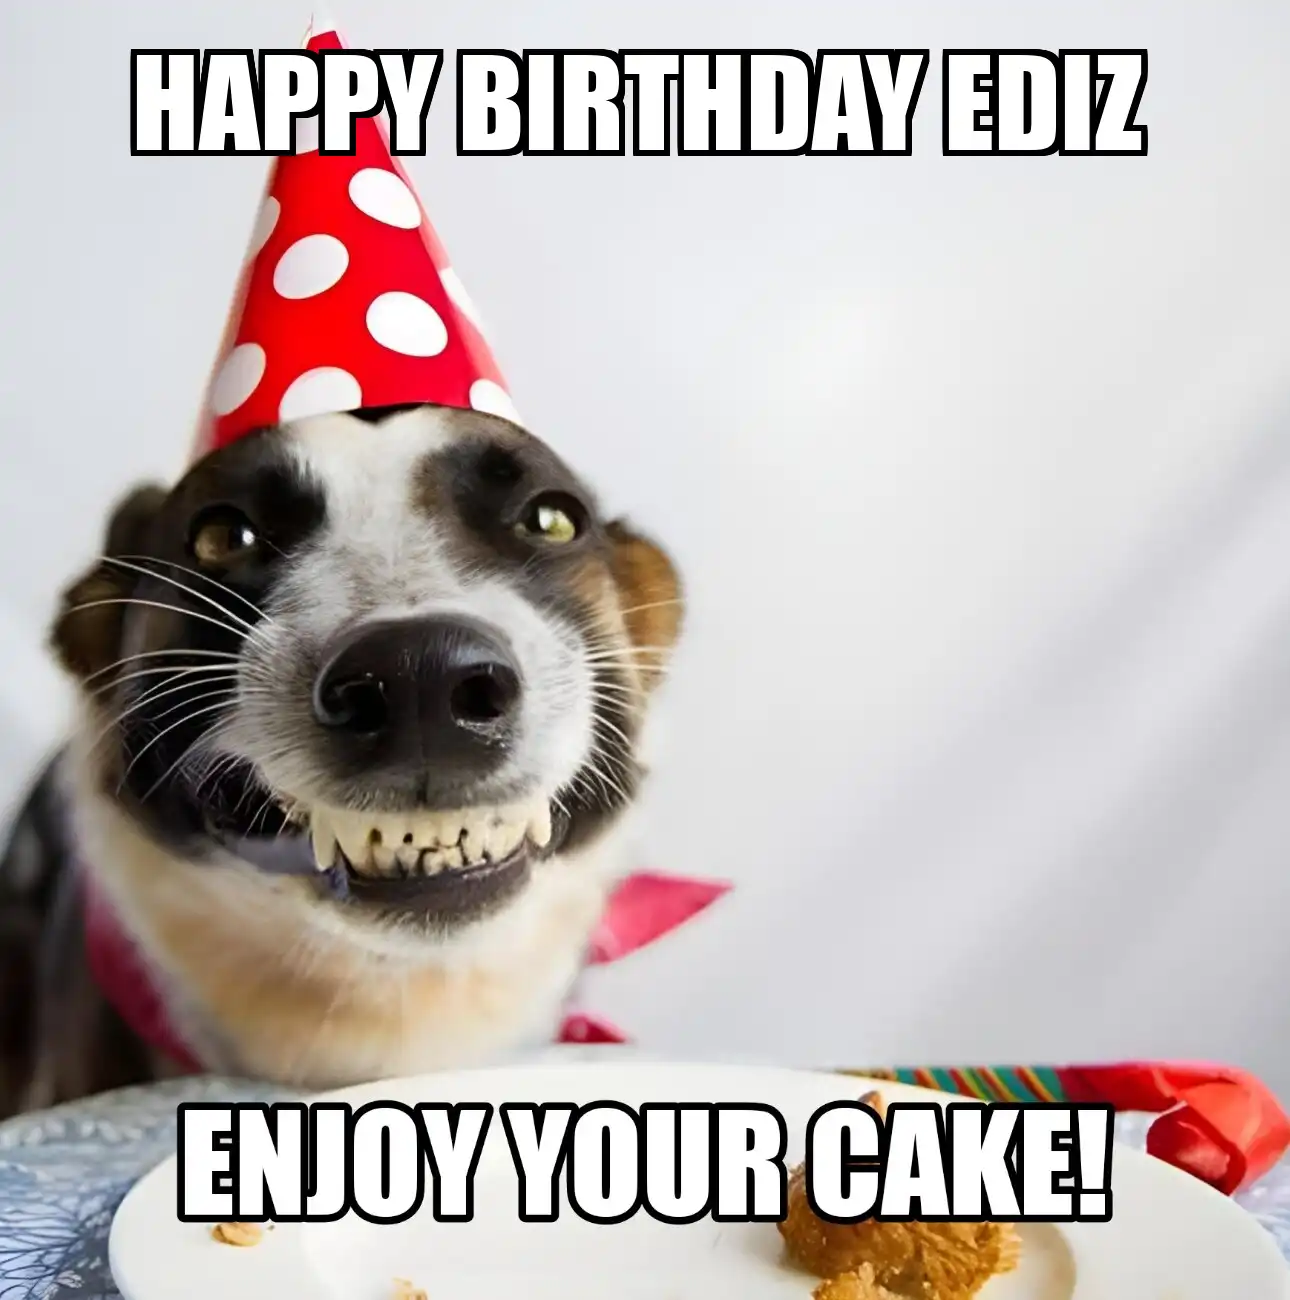 Happy Birthday Ediz Enjoy Your Cake Dog Meme